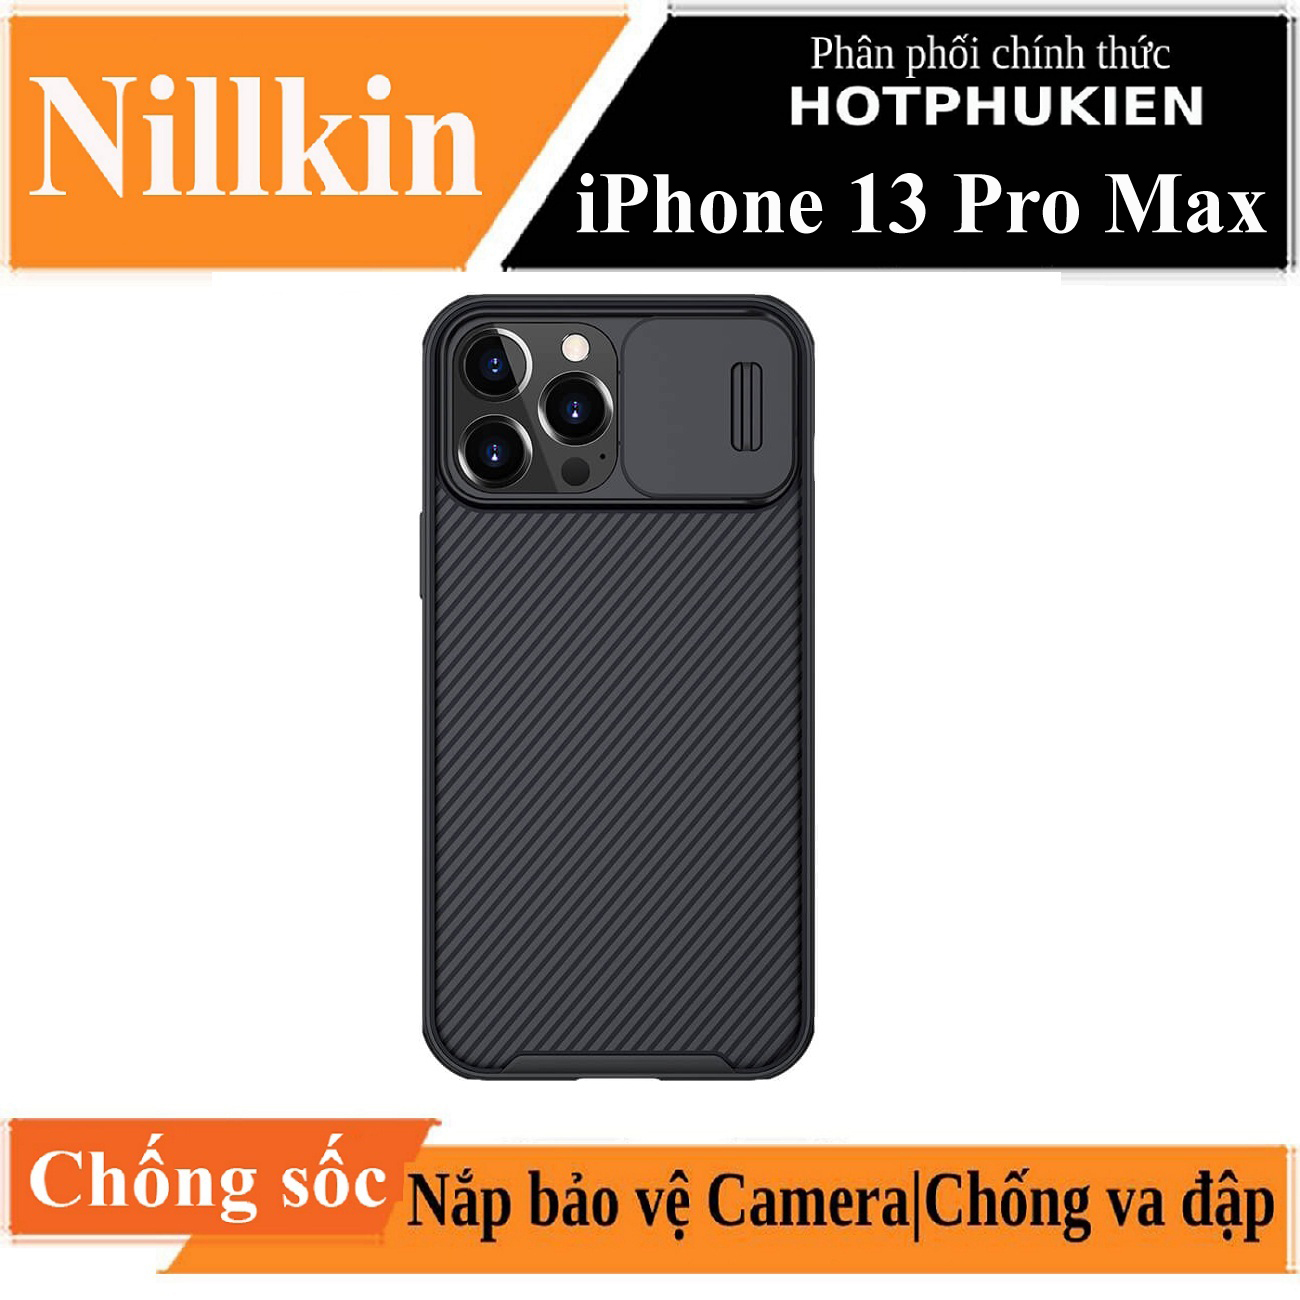 Ốp lưng chống sốc cho iPhone 13 Pro Max bảo vệ Camera hiệu Nillkin Camshield chống sốc cực tốt, chất liệu cao cấp, có khung và nắp đậy bảo vệ Camera - hàng nhập khẩu